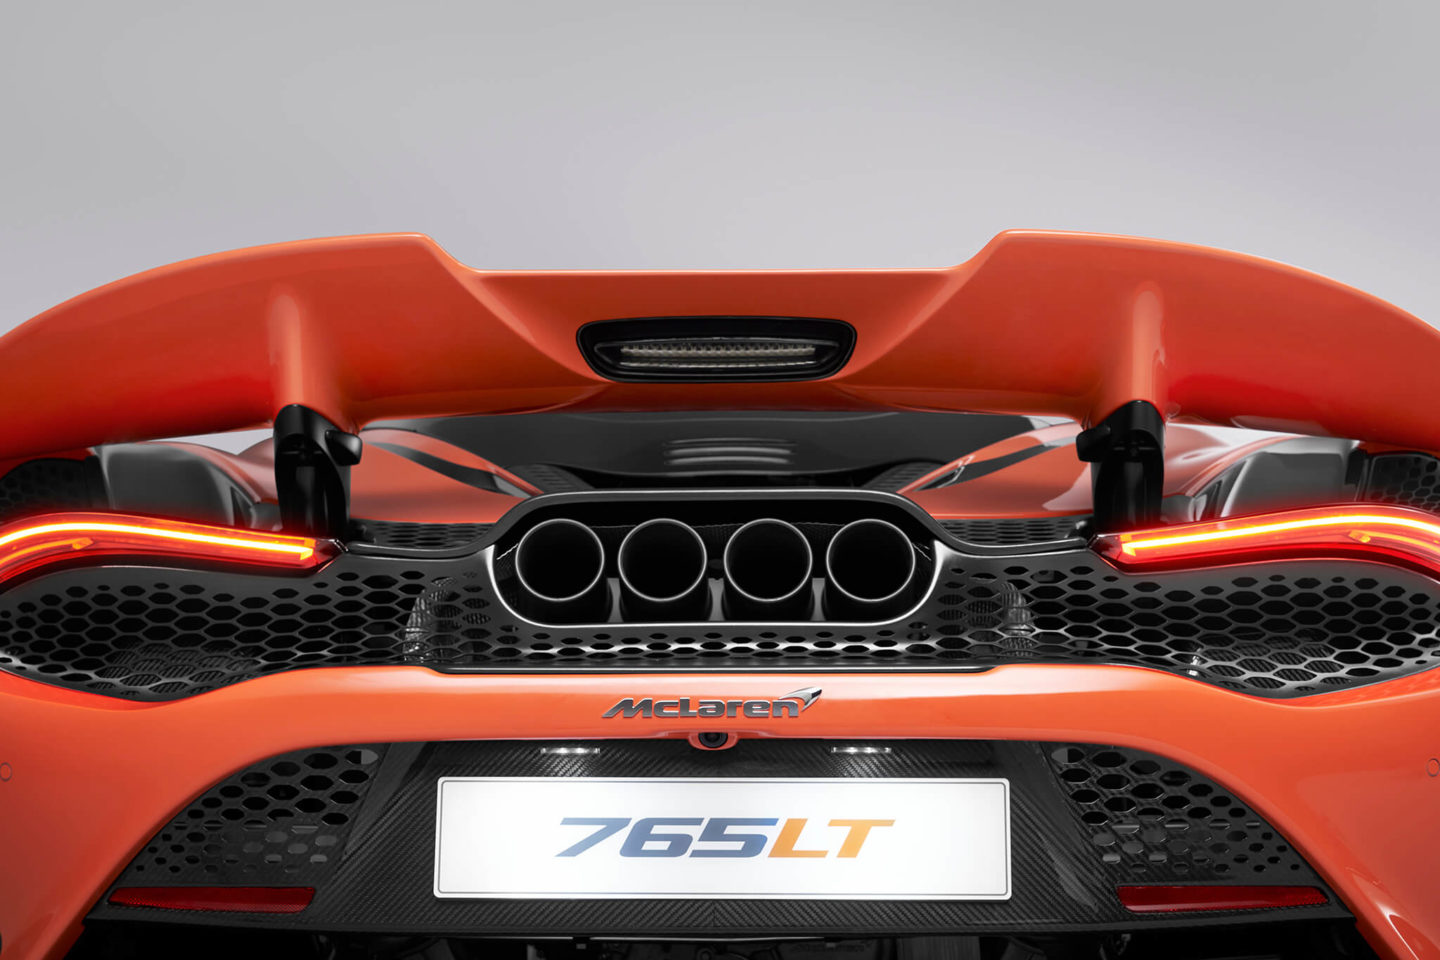 2020 McLaren 765LT